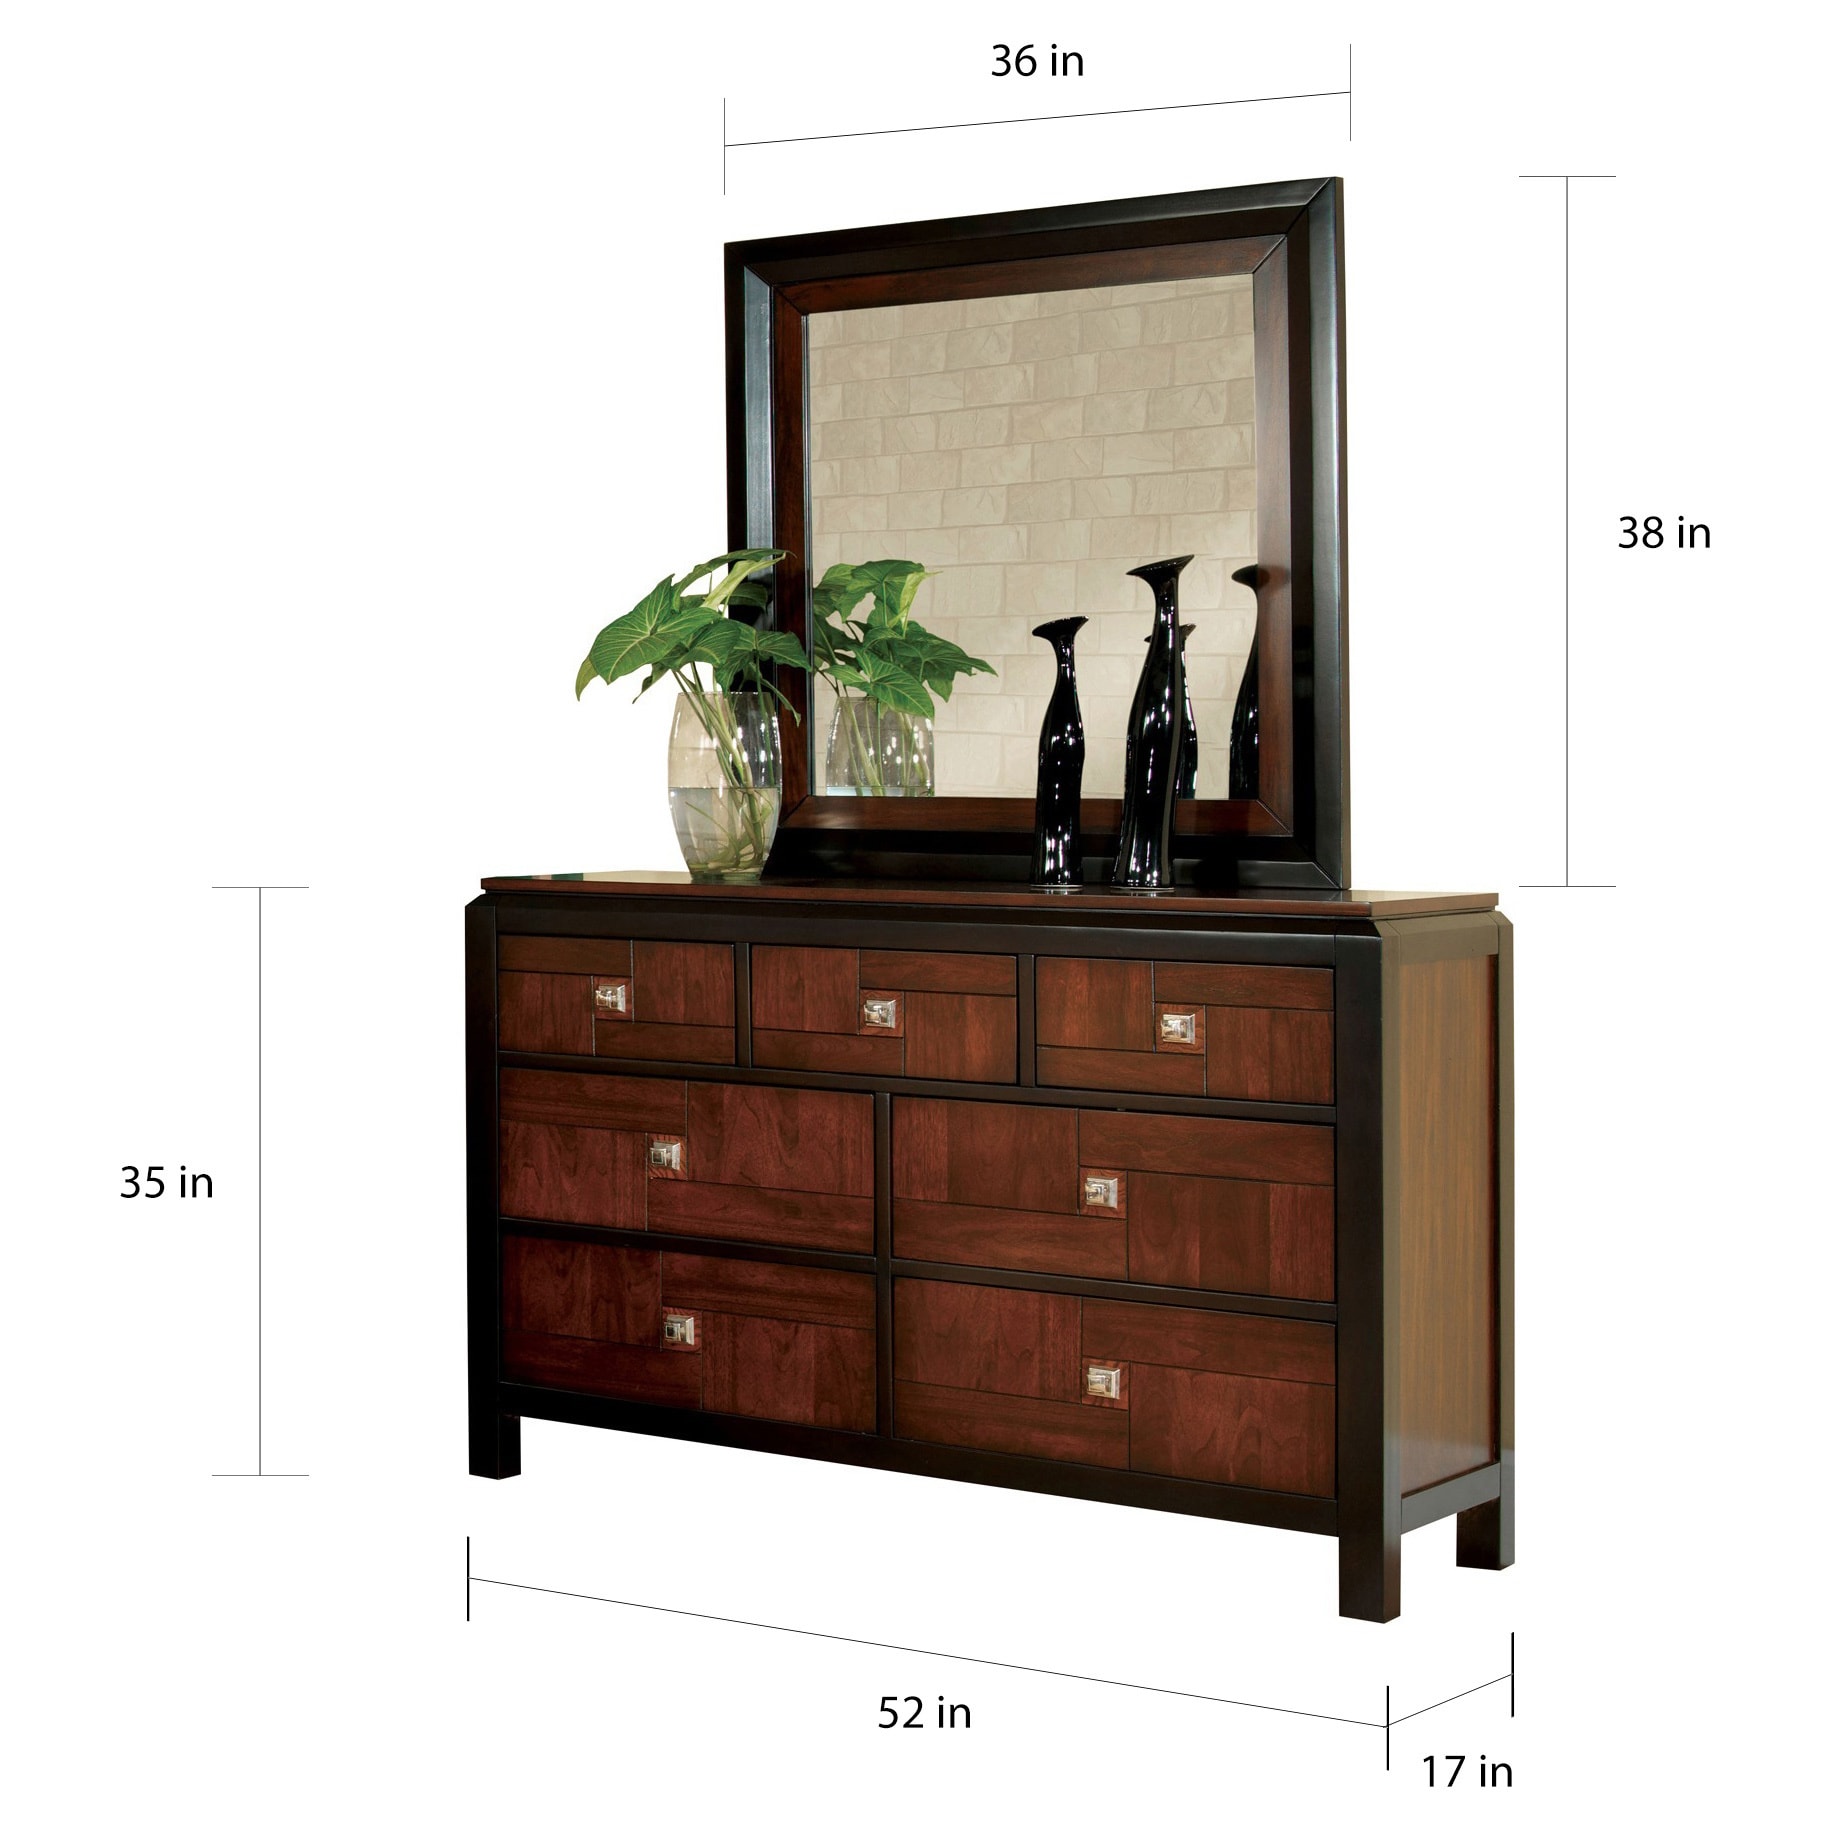 Walnut 4-PC Bedroom Set: AFR Furniture Clearance Center